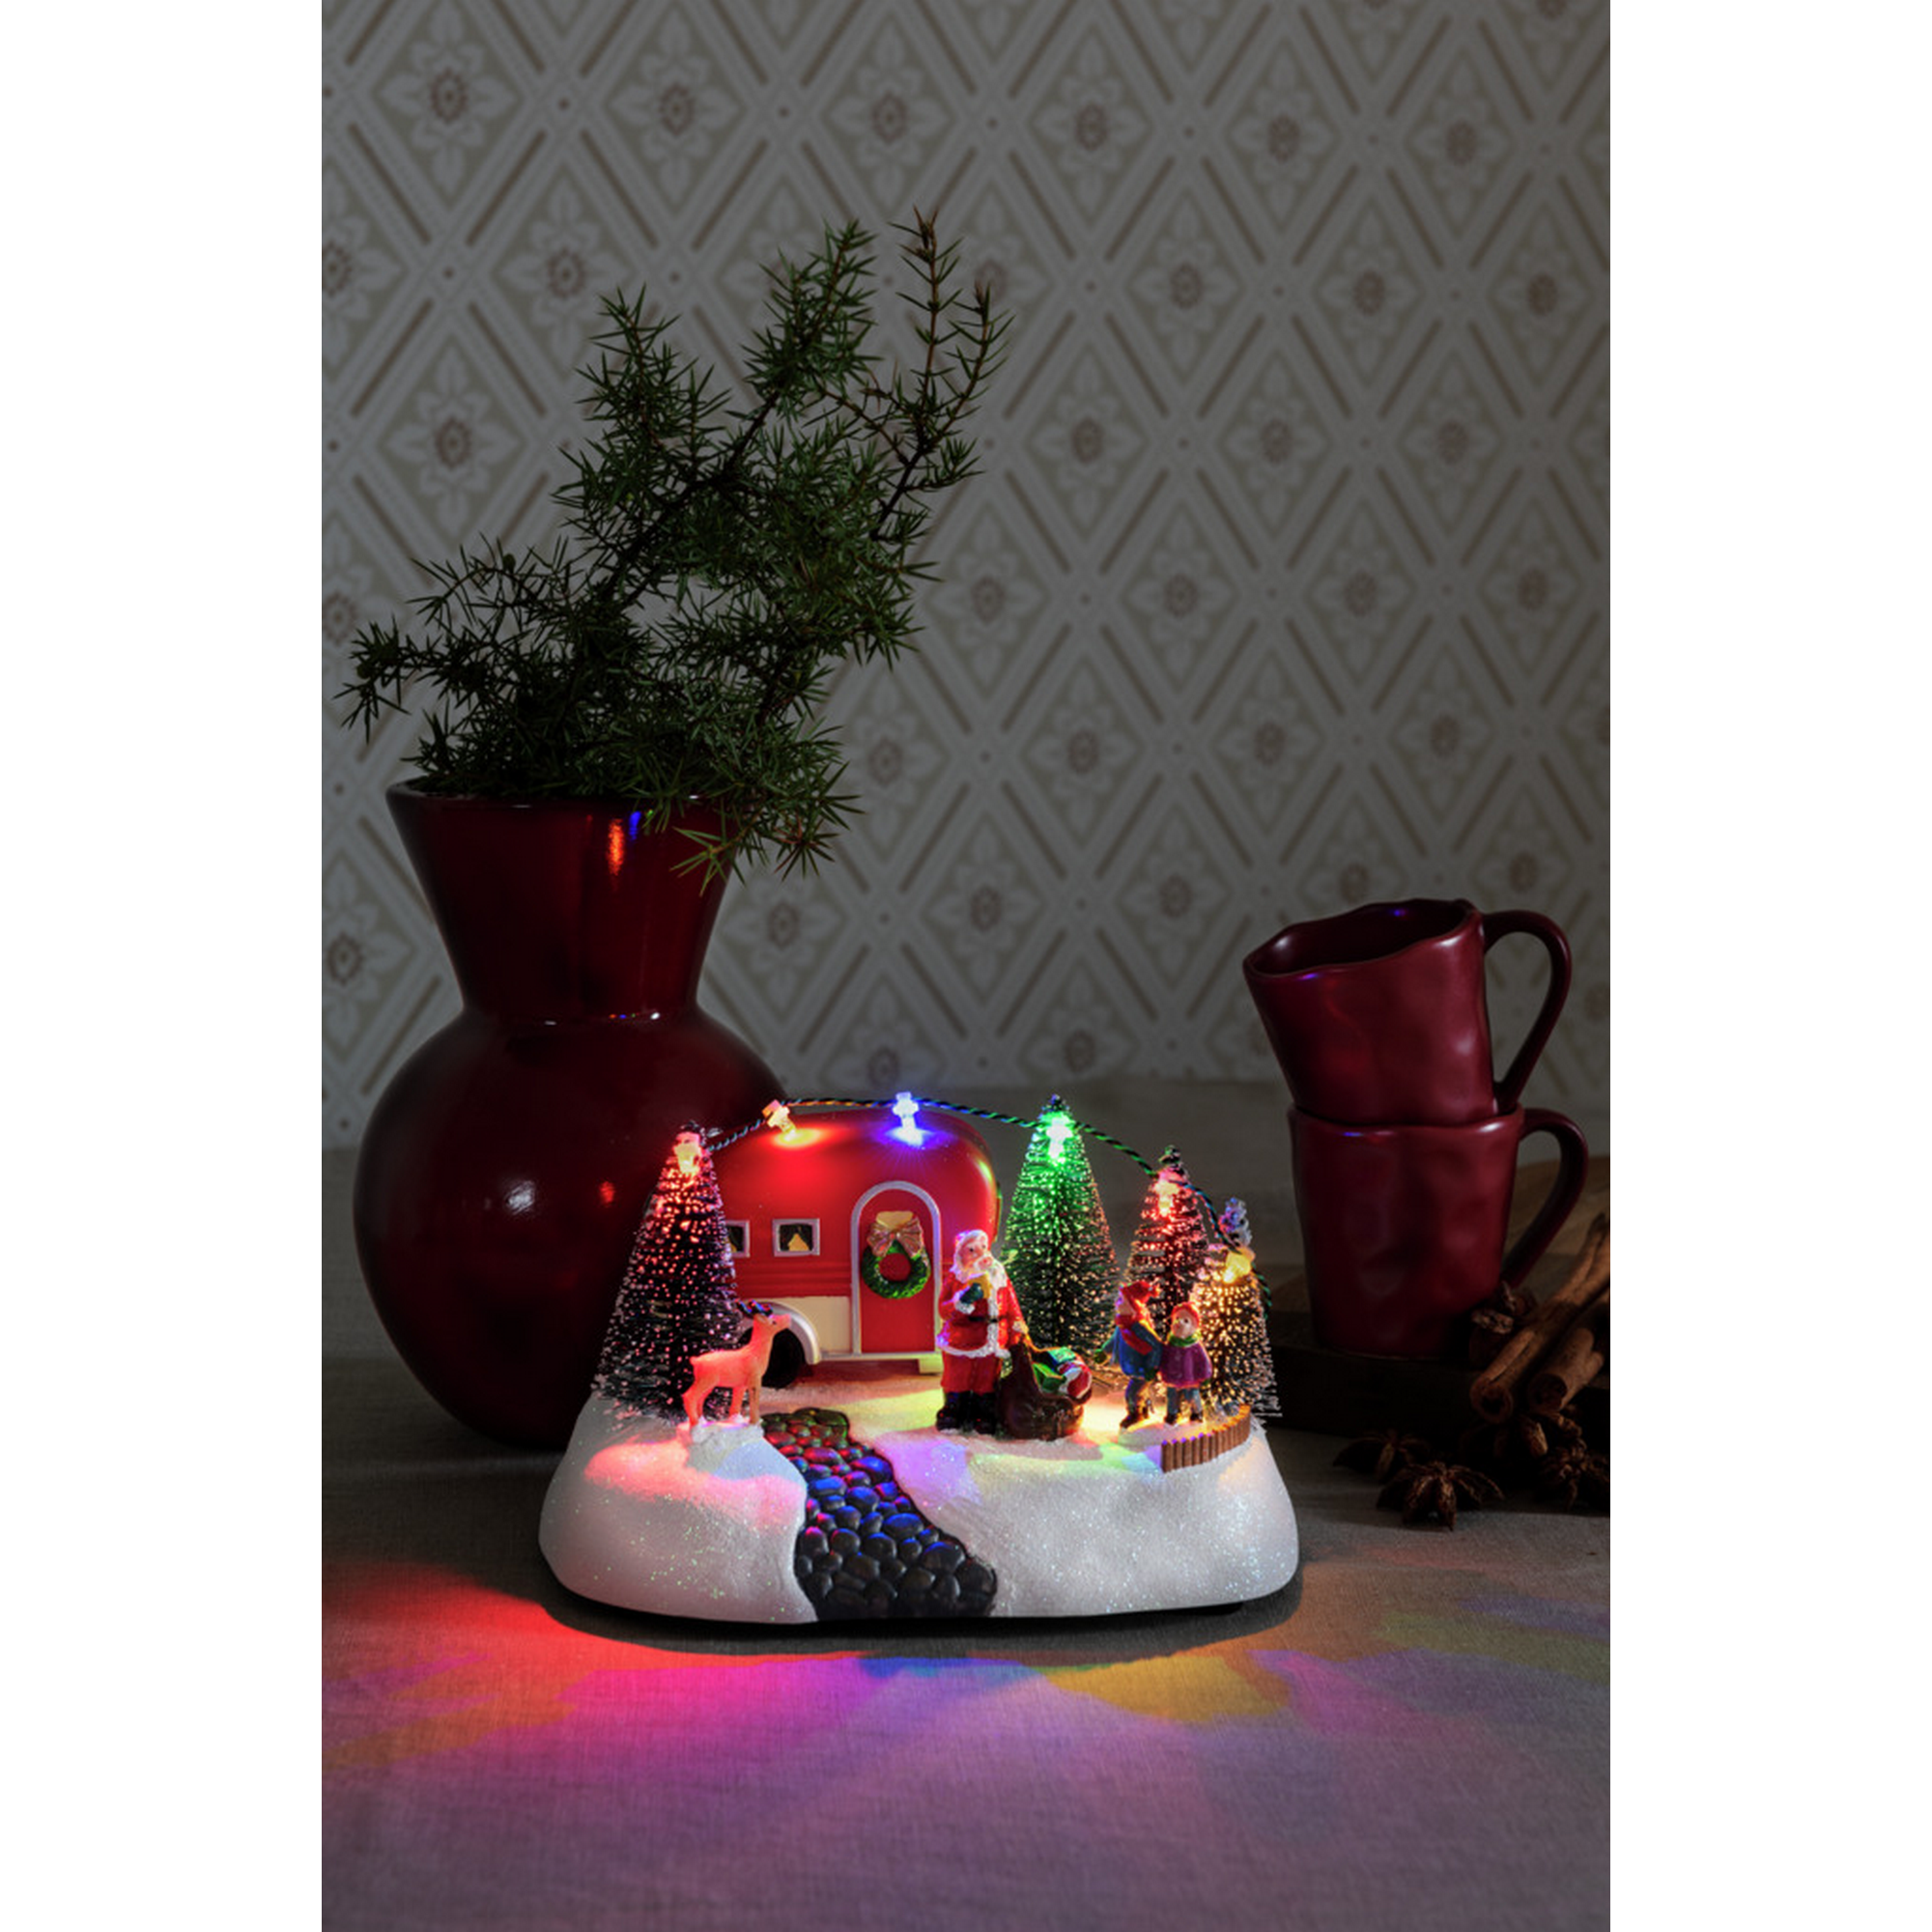 LED-Szenerie 'Wohnwagen' 6 LEDs bunt 19 x 13,5 cm + product picture